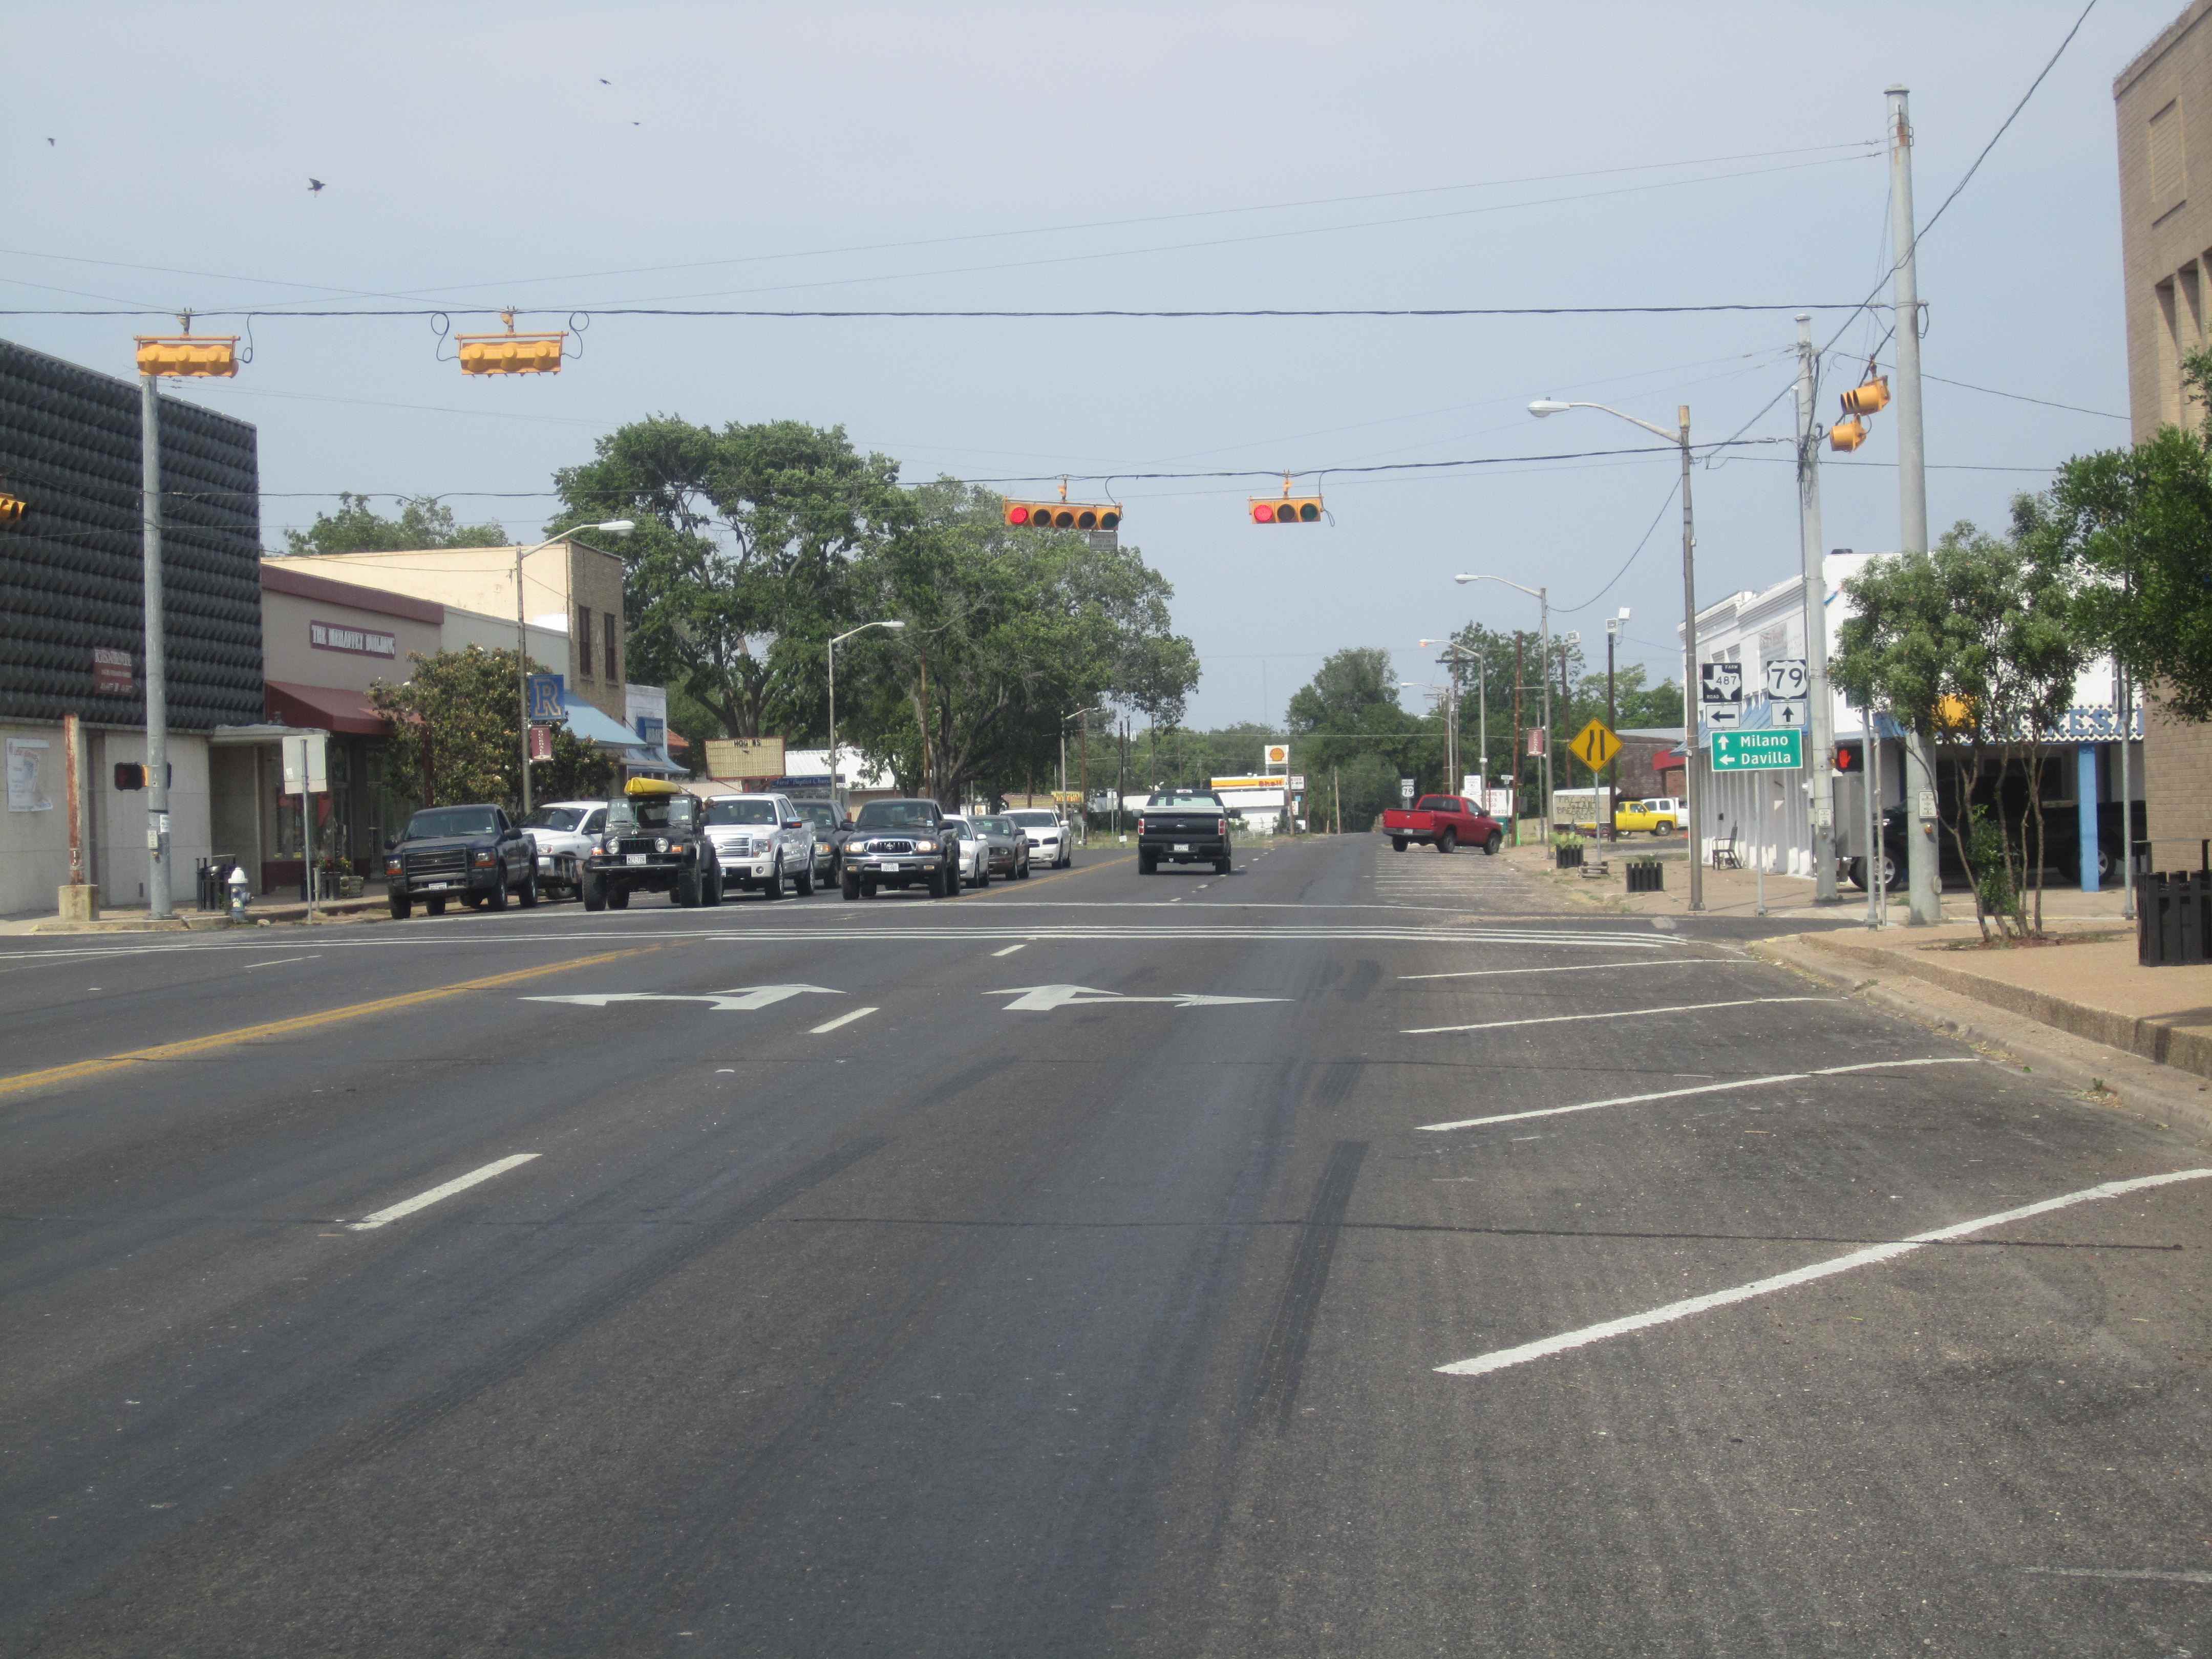 Datei:US Route 79 ist die Hauptstraße von Rockdale, TX IMG 2255.JPG - Wikimedia Commons